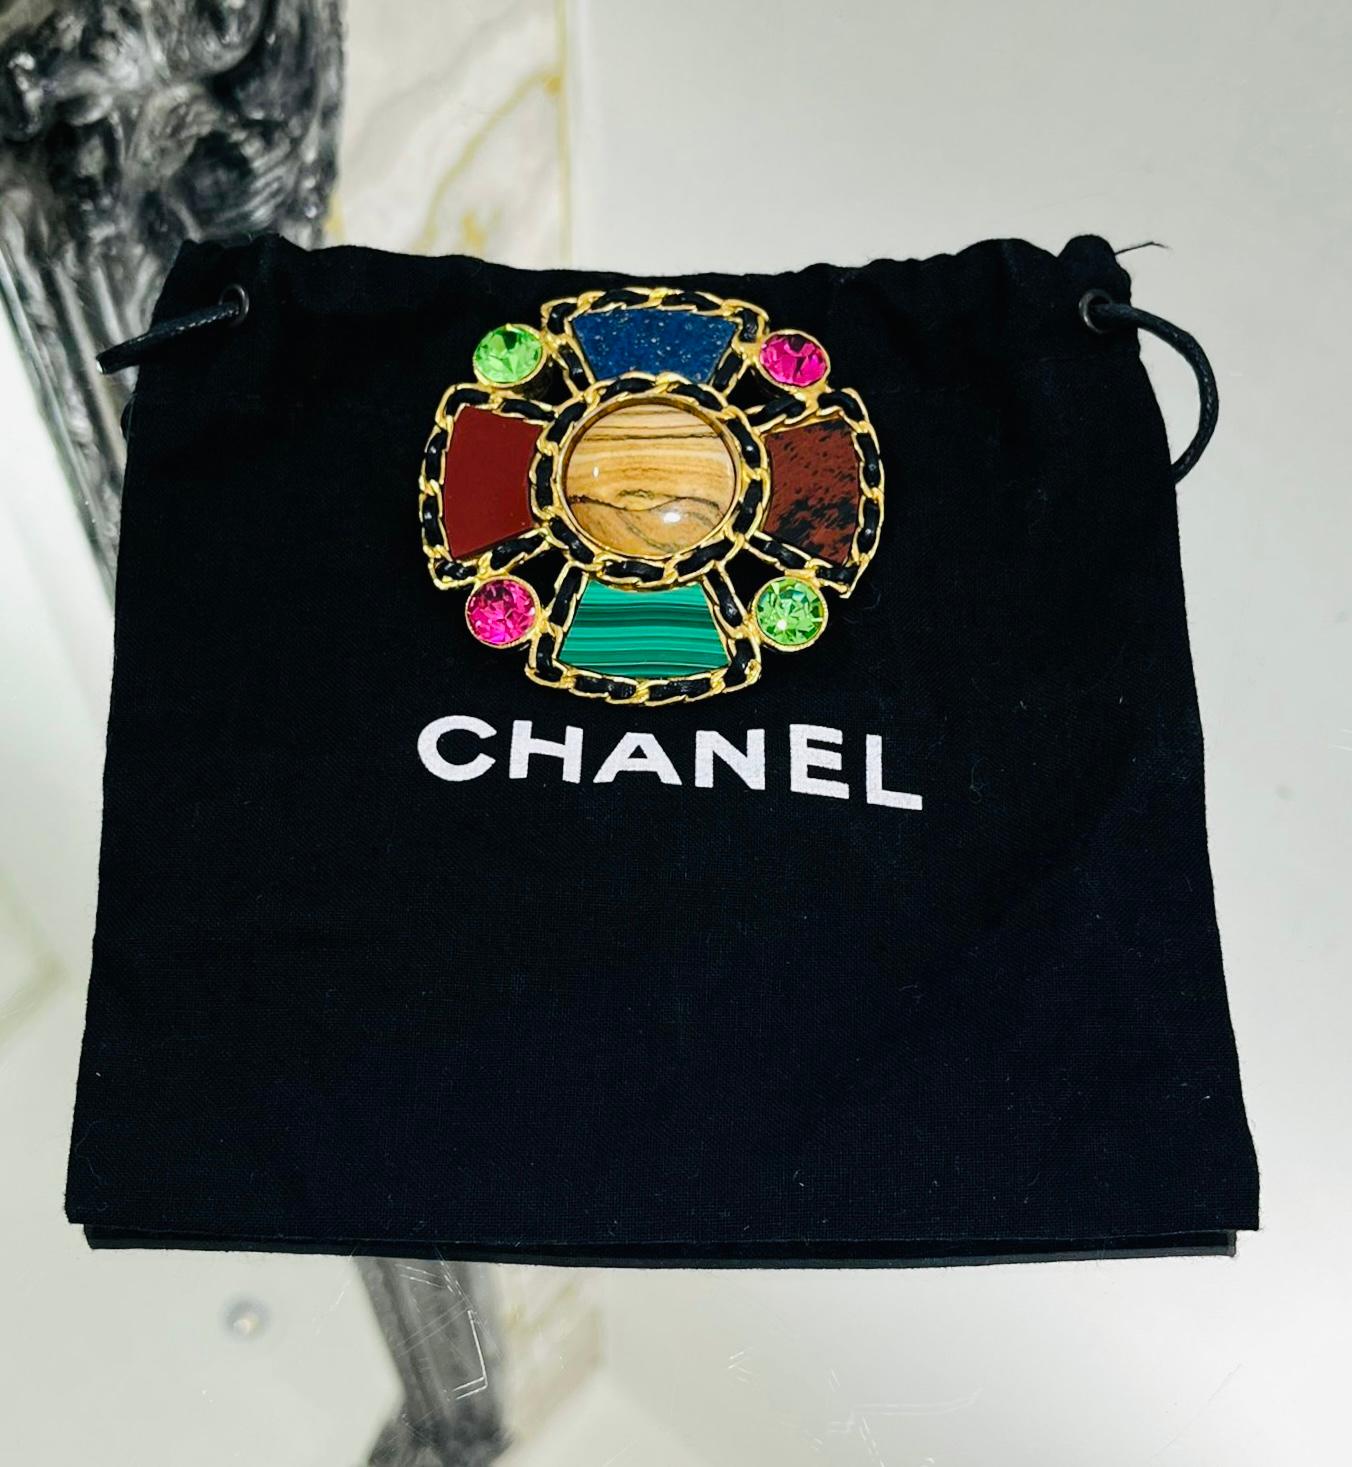 Très rare - Chanel Vintage Gripoix Multi-Gemstone & Crystal Flower Brooch

Très rare est cette broche en or de Chanel conçue avec la signature de cuir et de chaîne, cinq pierres semi-précieuses avec deux cristaux verts et deux cristaux roses entre